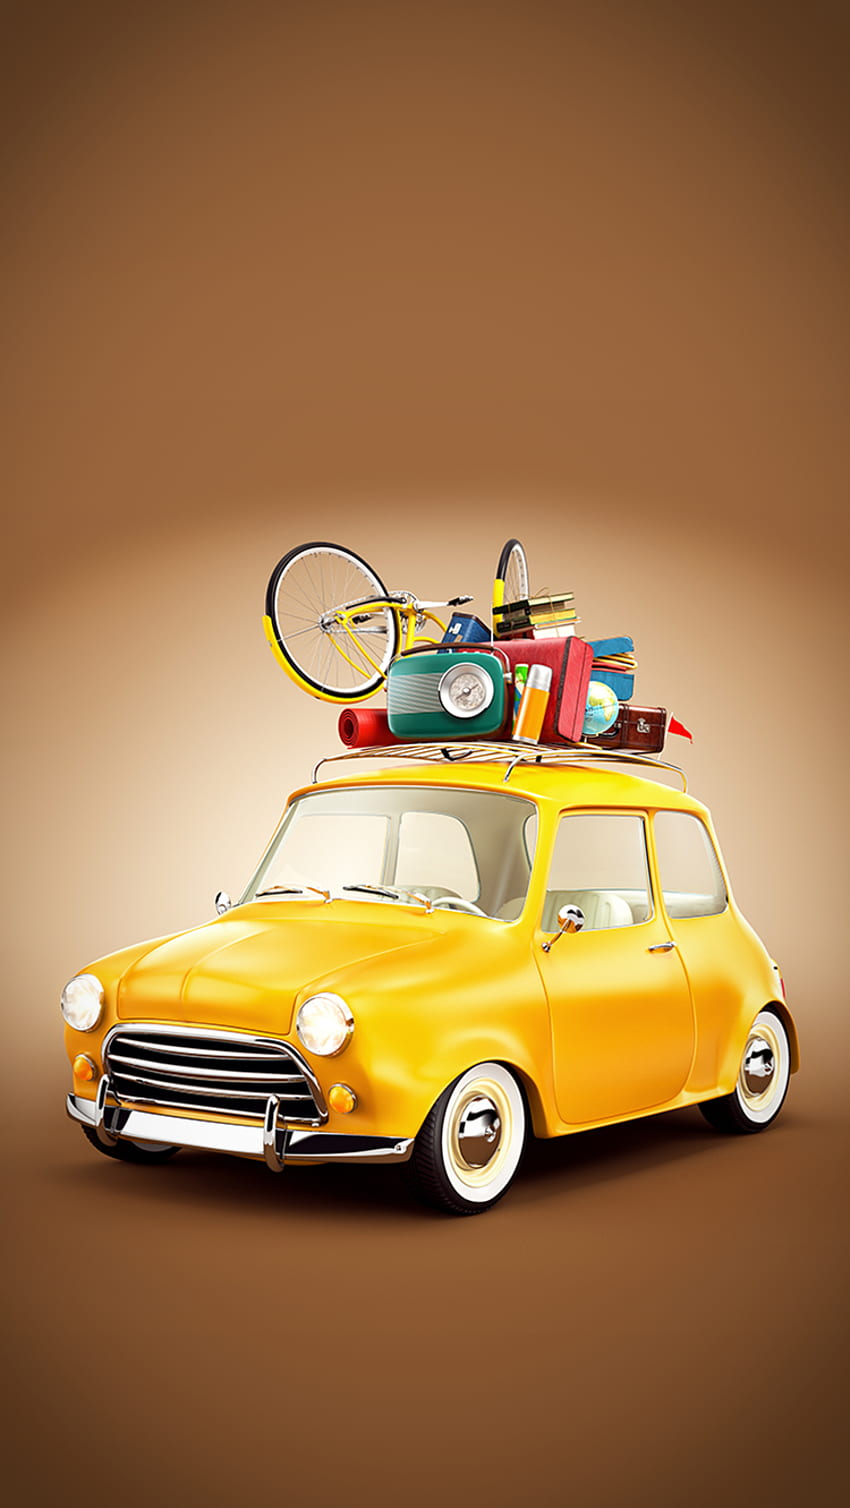 Ƒ↑TAP DAN DAPATKAN APLIKASINYA! Art Creative Car Travel Vacation Holiday Fun Yellow iPhone 6 wallpaper ponsel HD